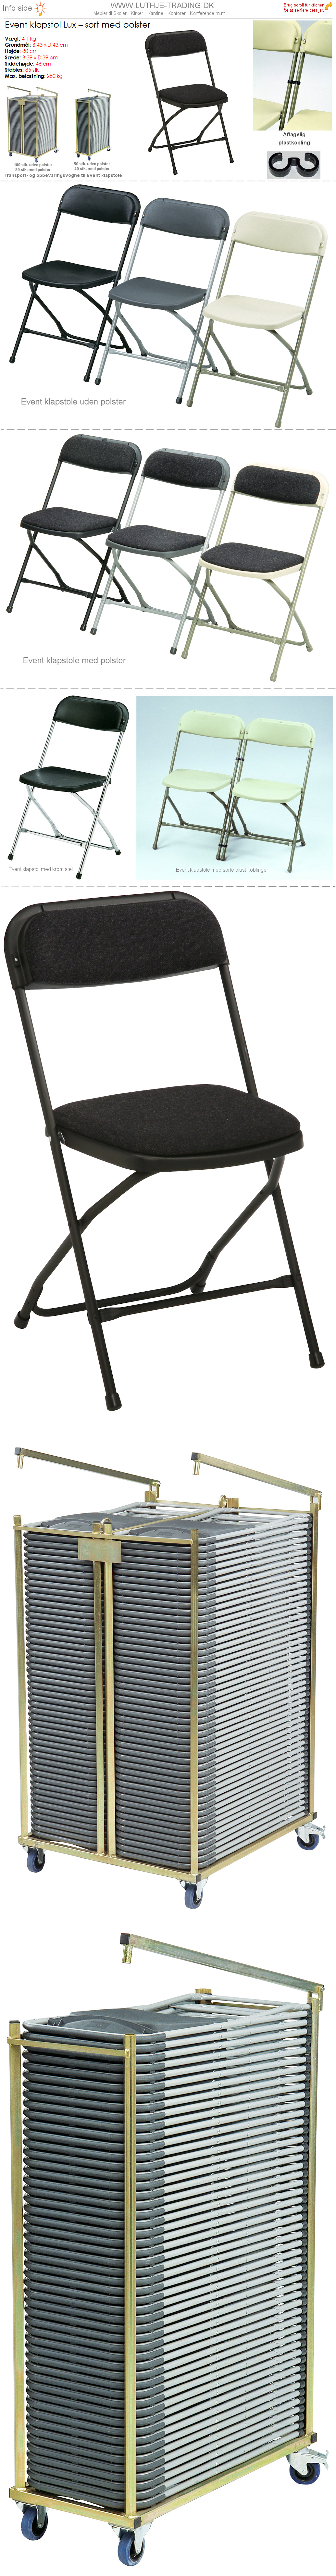 Klapstol Event sort plast og stel. Polster på sæde og ryg. Der findes en transport- og opbevaringsvogn til denne klapstol. Vi giver gerne et godt tilbud på denne klapstol.